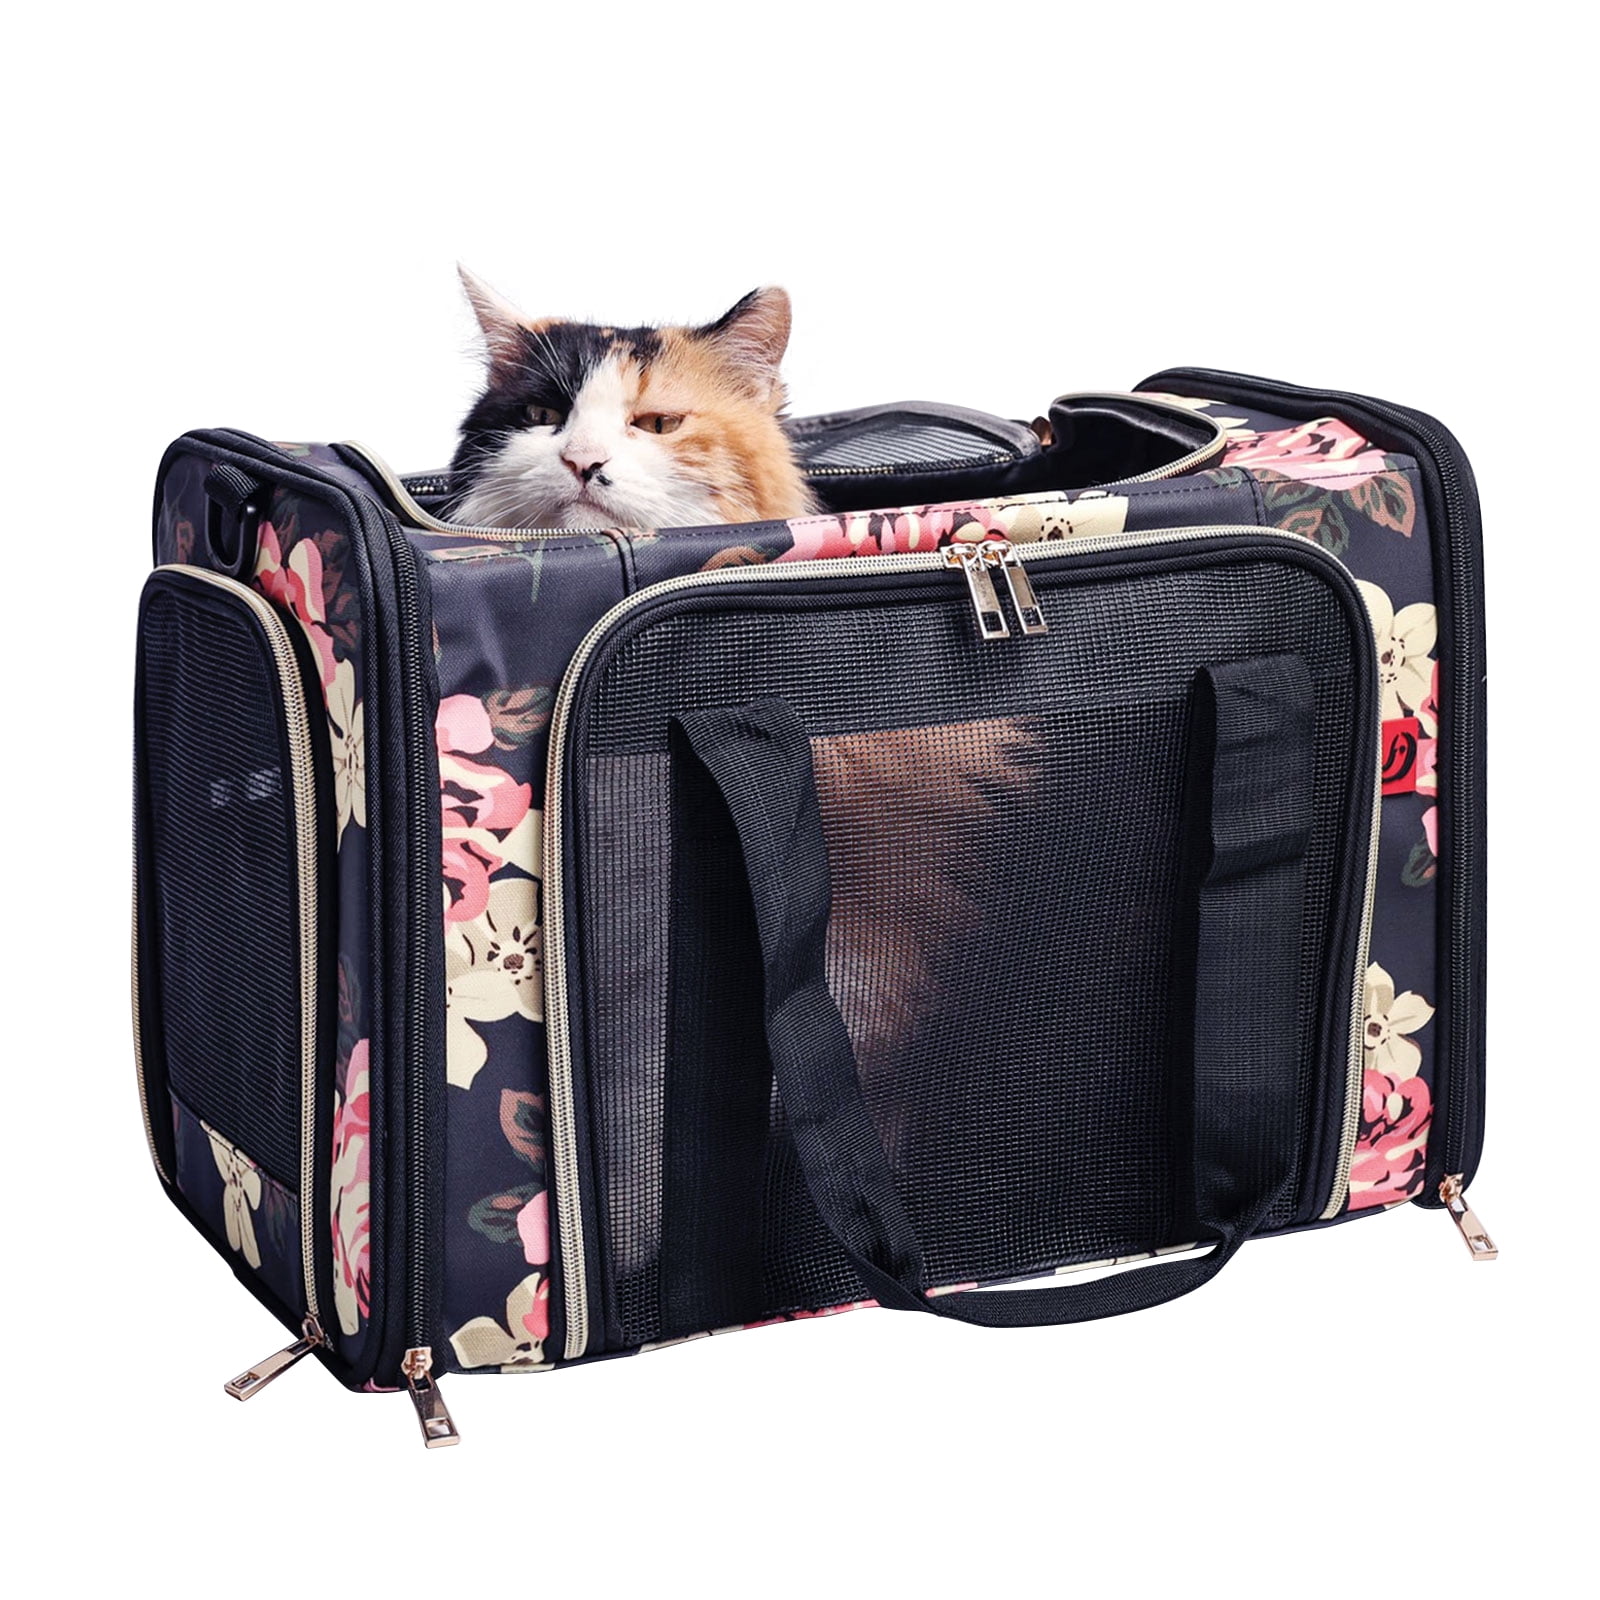  Chocolat Cookies Cat Carrier Portable Pet Carrier Lightweight Dog  Purse Travel Handbag for Dogs Cats : Pet Supplies